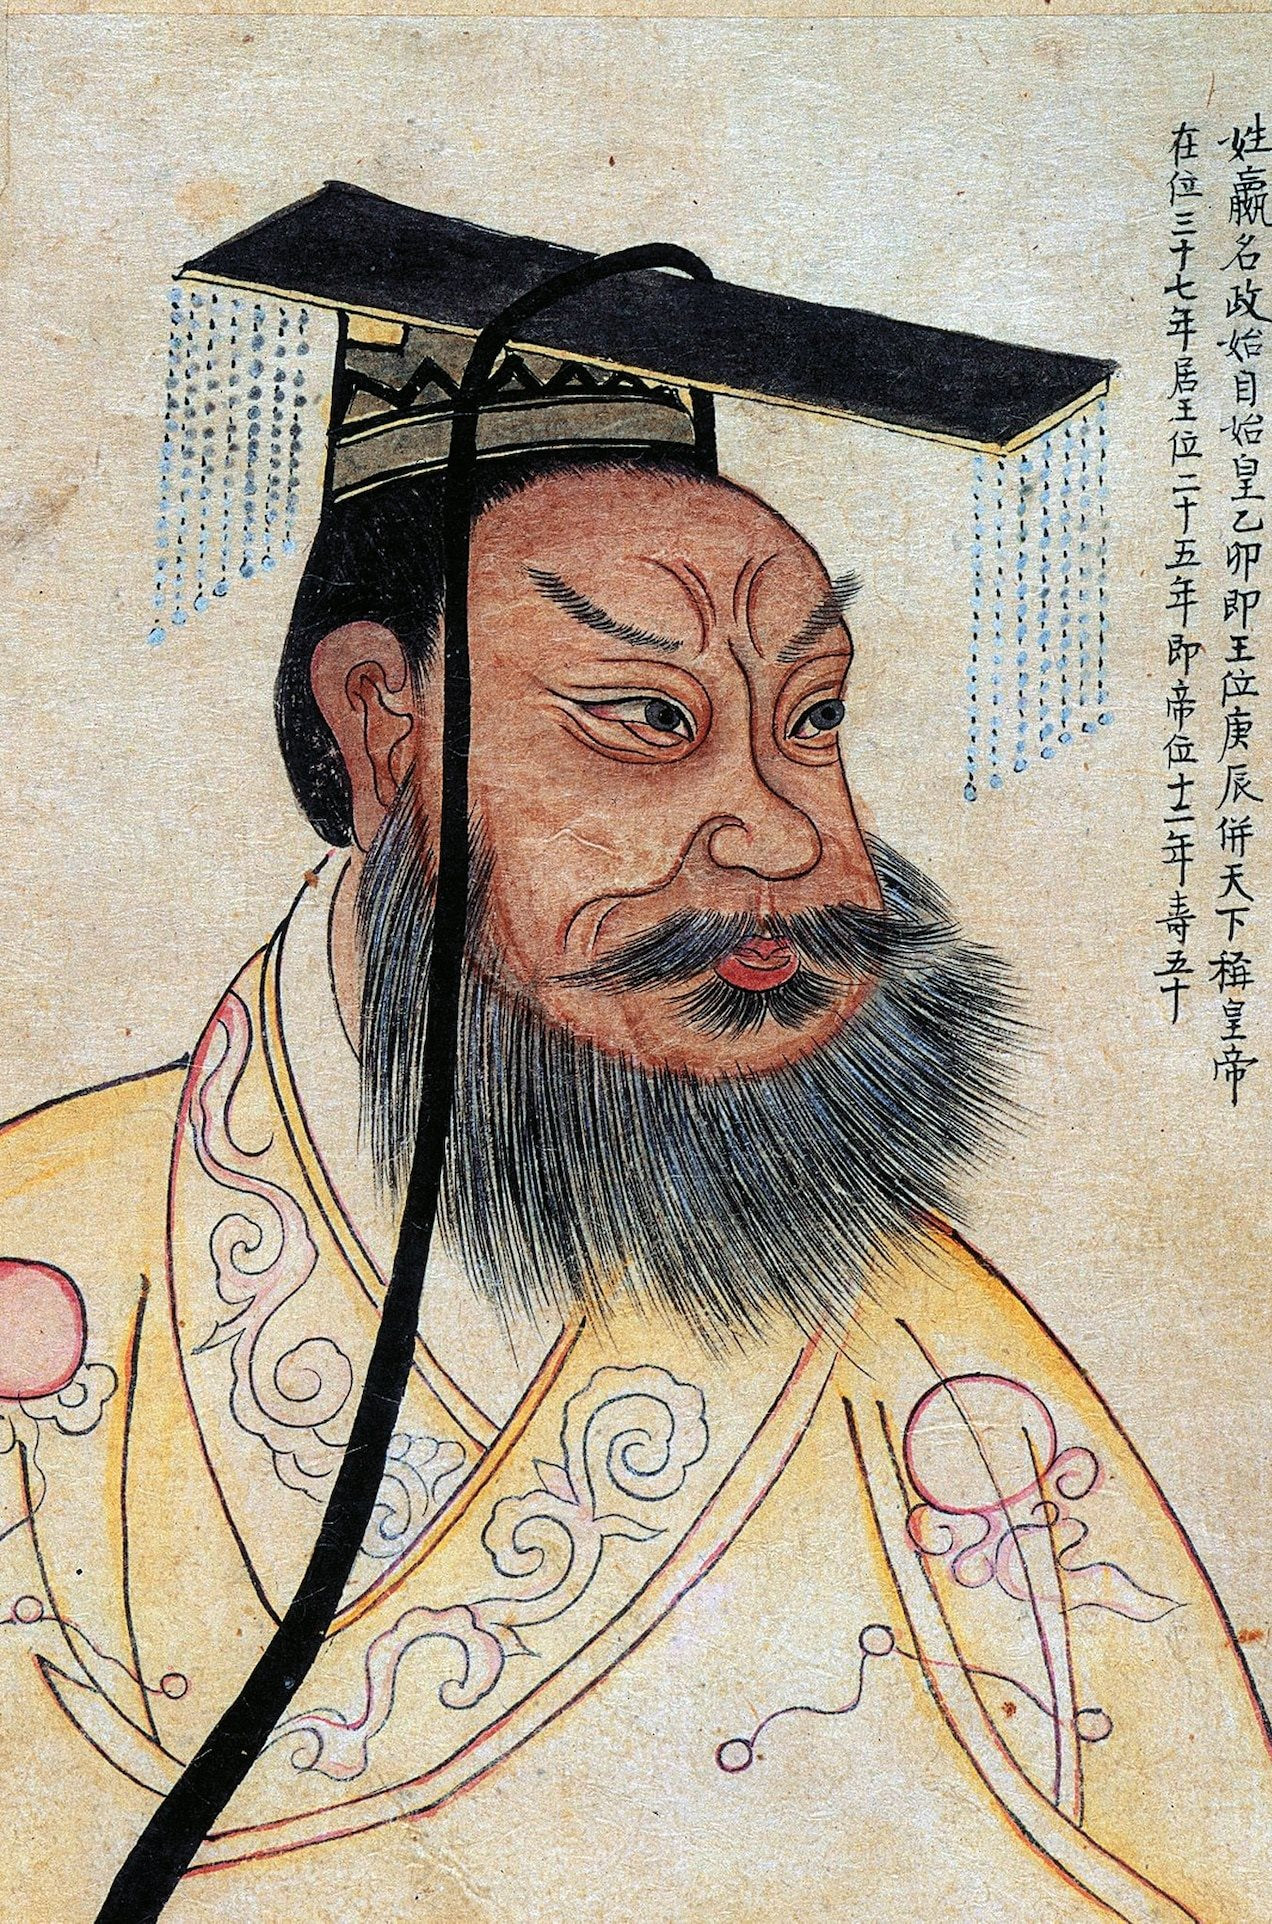 Ngày này năm xưa: Hoàng đế khét tiếng nhất lịch sử Trung Quốc ra đời, có nhiều công lao với nền kinh tế lớn thứ hai thế giới